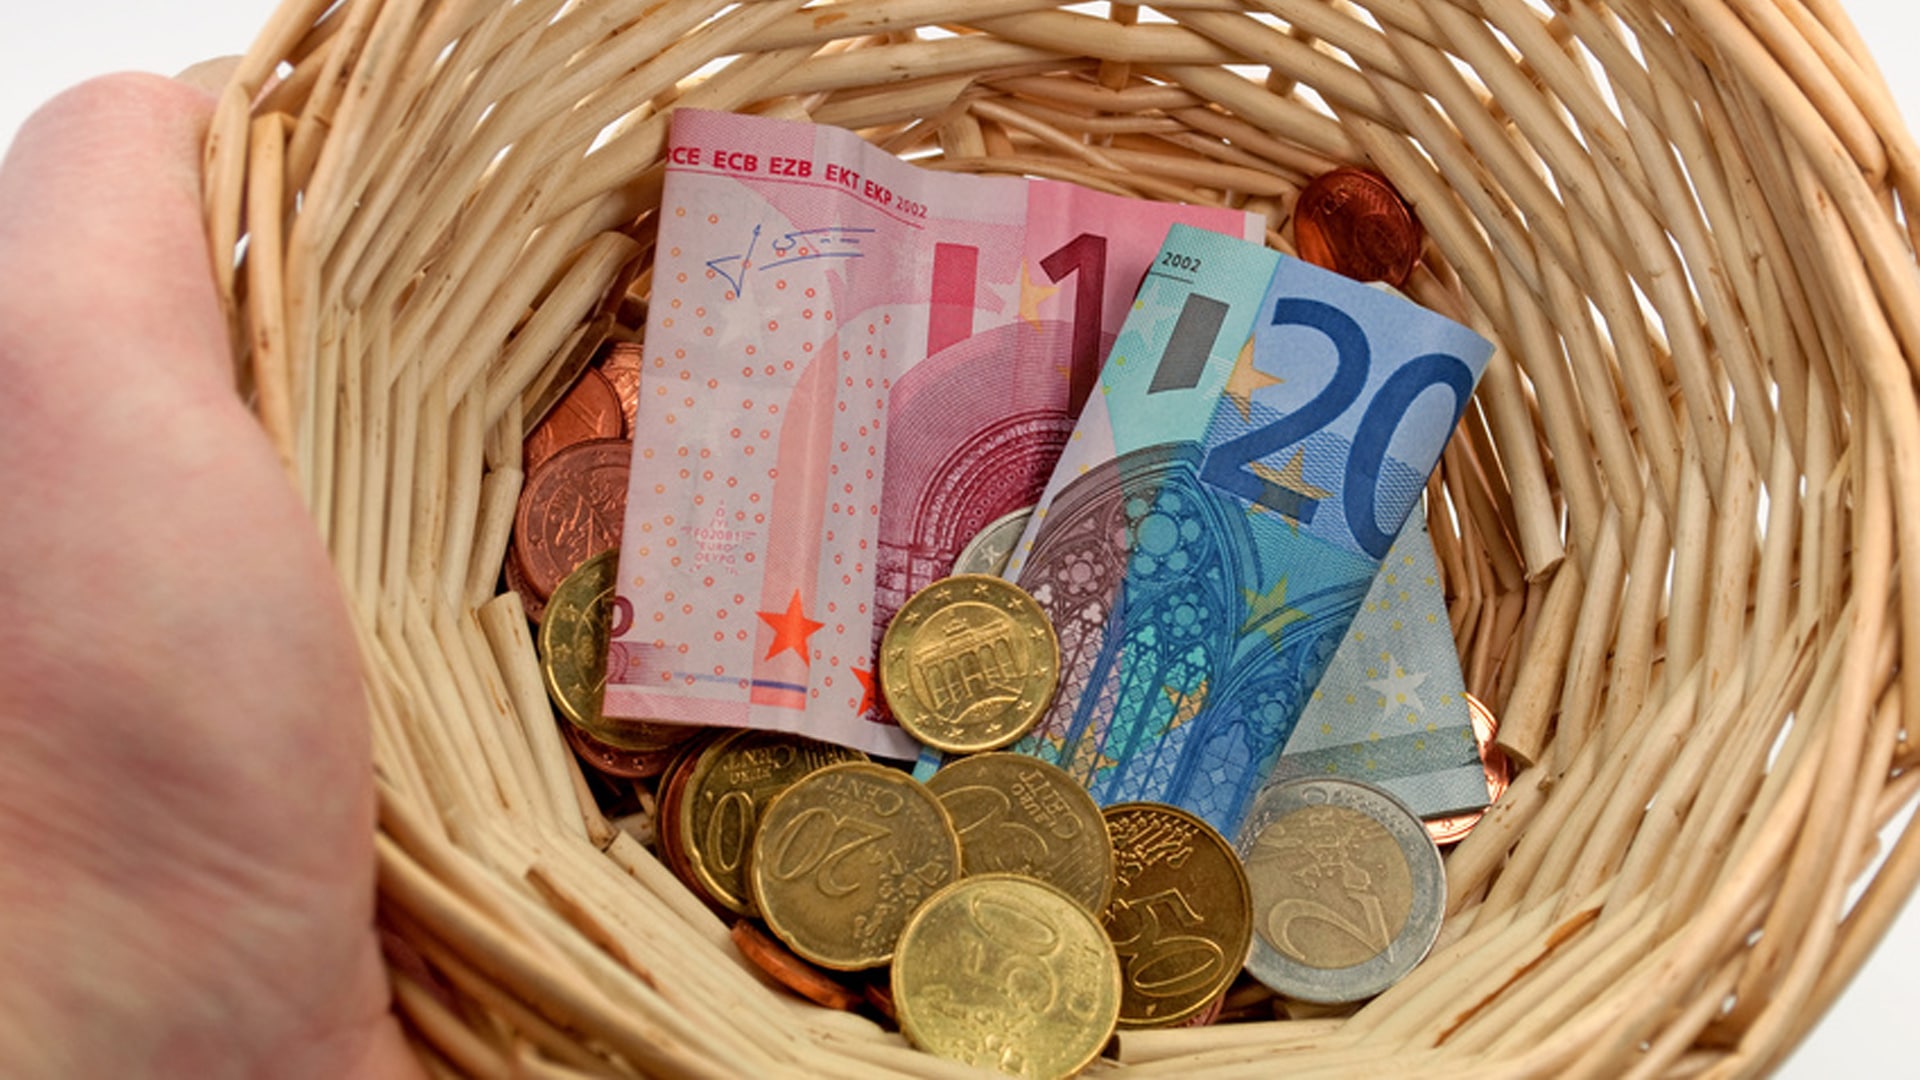 Pro Spende geben die Deutschen im Schnitt 35 Euro